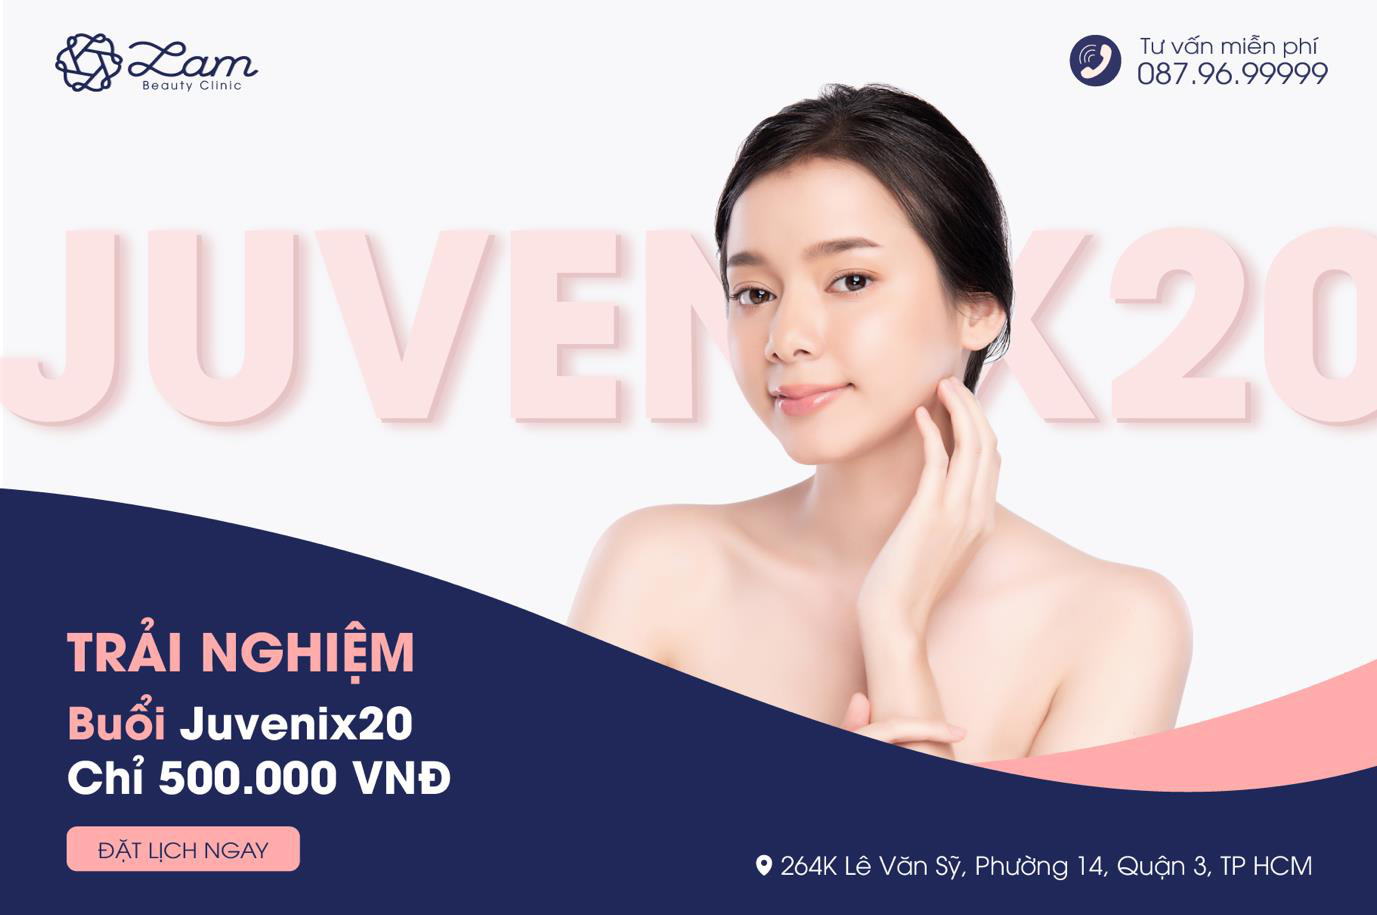 Đánh bay sẹo rỗ nhờ công nghệ Juvenix20 - Plus Cell tại Lam Beauty Clinic - Ảnh 1.